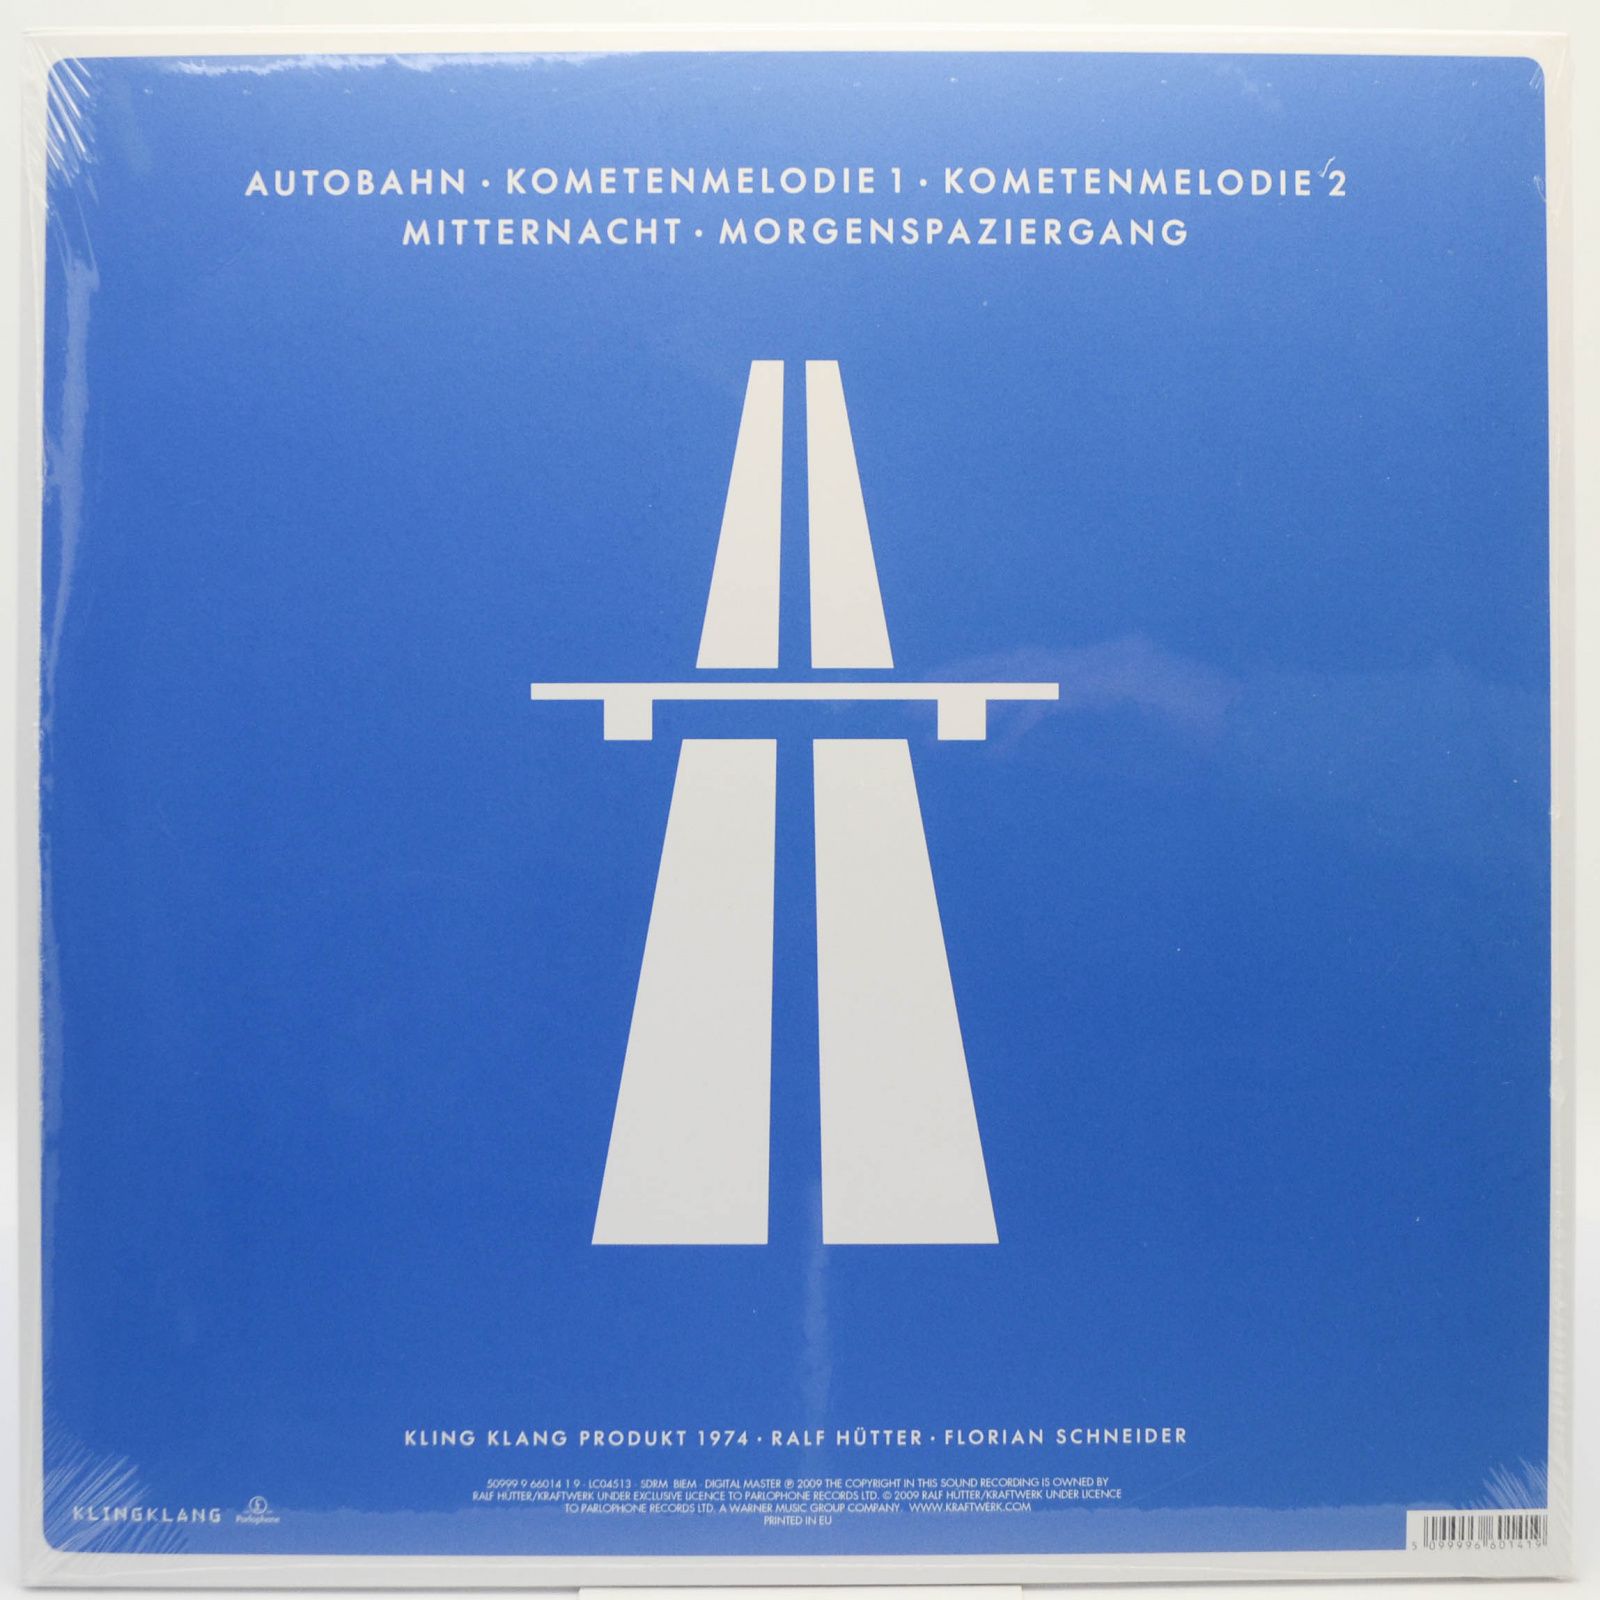 Kraftwerk — Autobahn, 2009